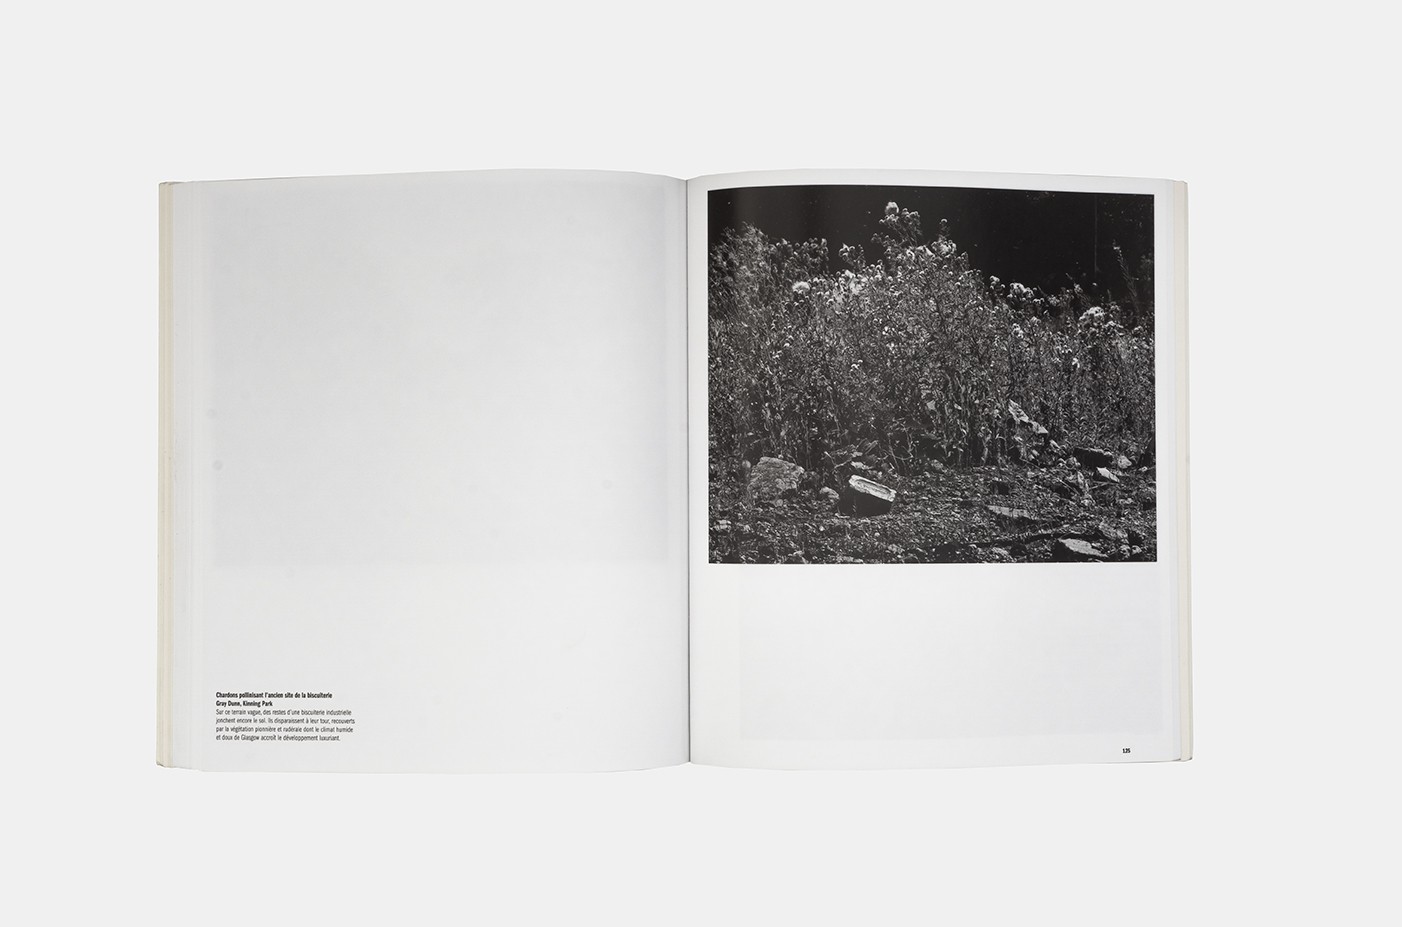 Camille Fallet - Grass Grows - *Grass Grows*
Le Point du jour, 19,7 x 22,4 cm, broché avec jaquette, 122 photographies en couleur et noir & blanc, 168 pages, avec le texte 